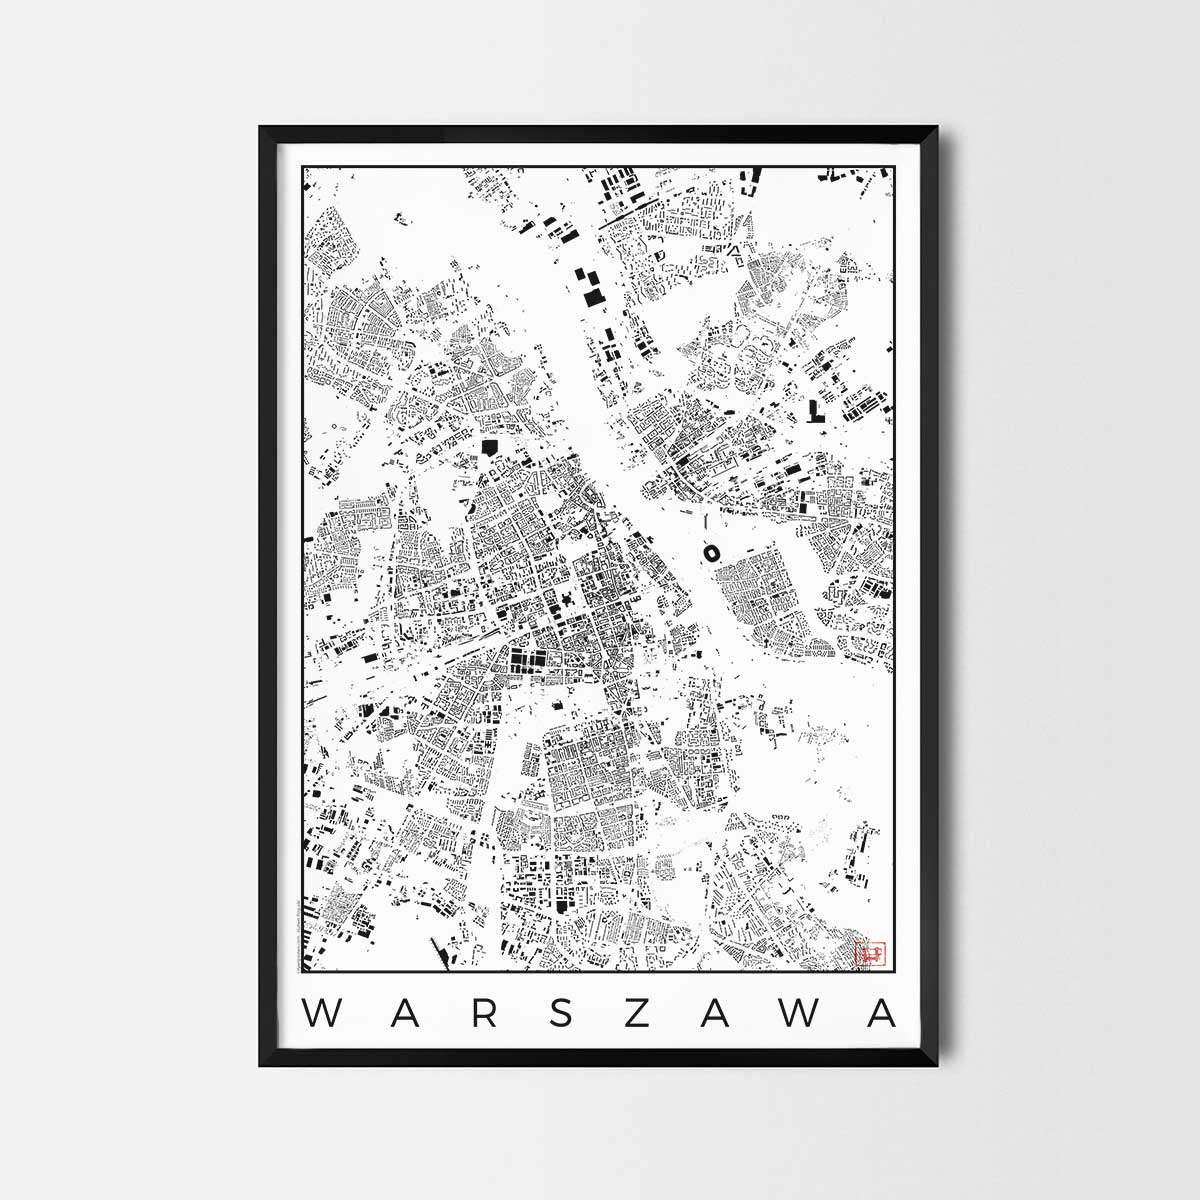 Warszawa Map Poster schwarzplan Urban plan city map art posters map posters city art prints city posters